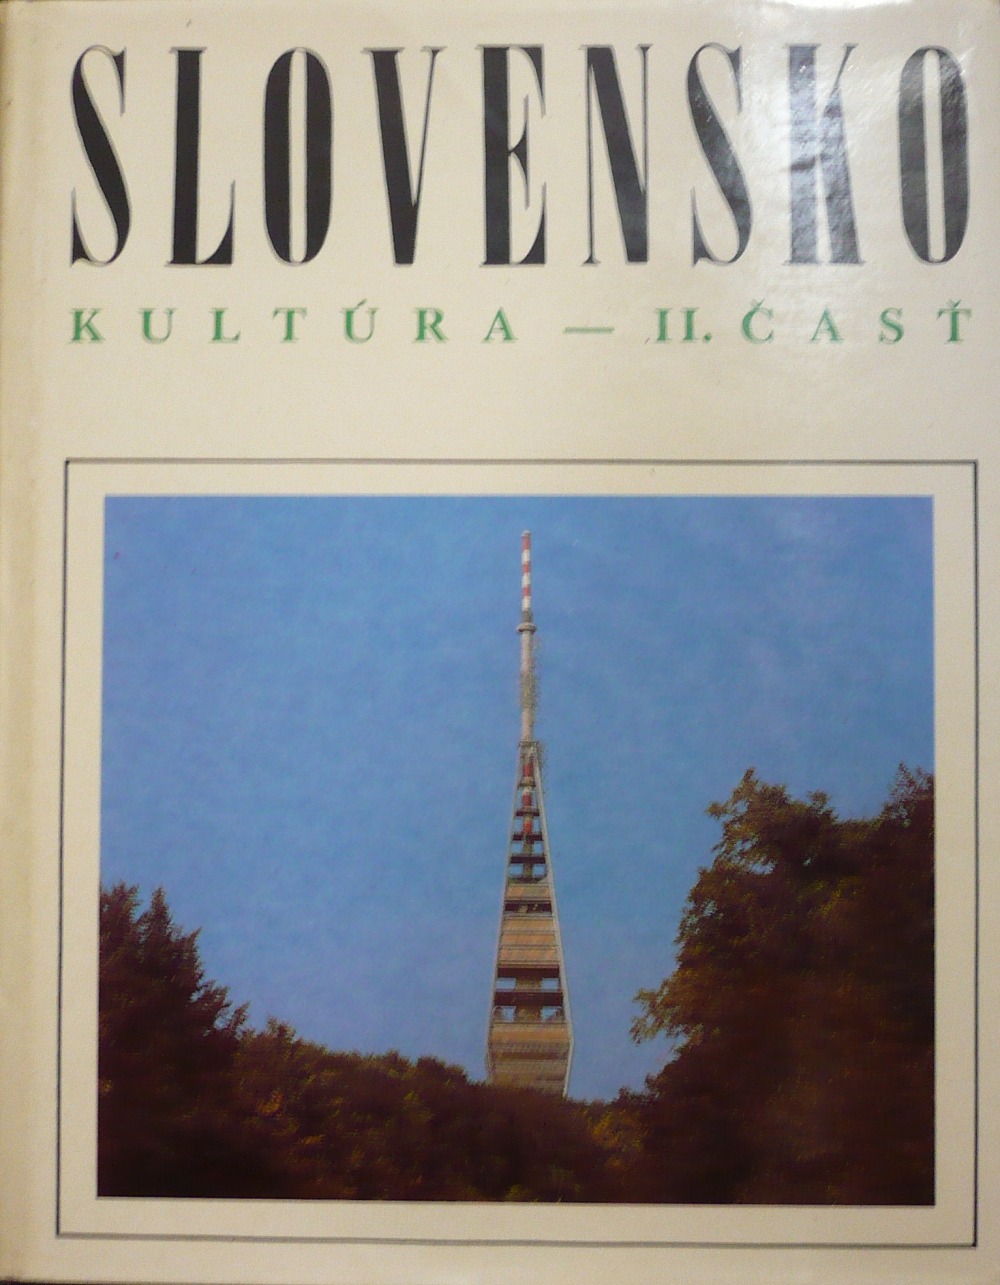 Slovensko: Kultúra - II. časť